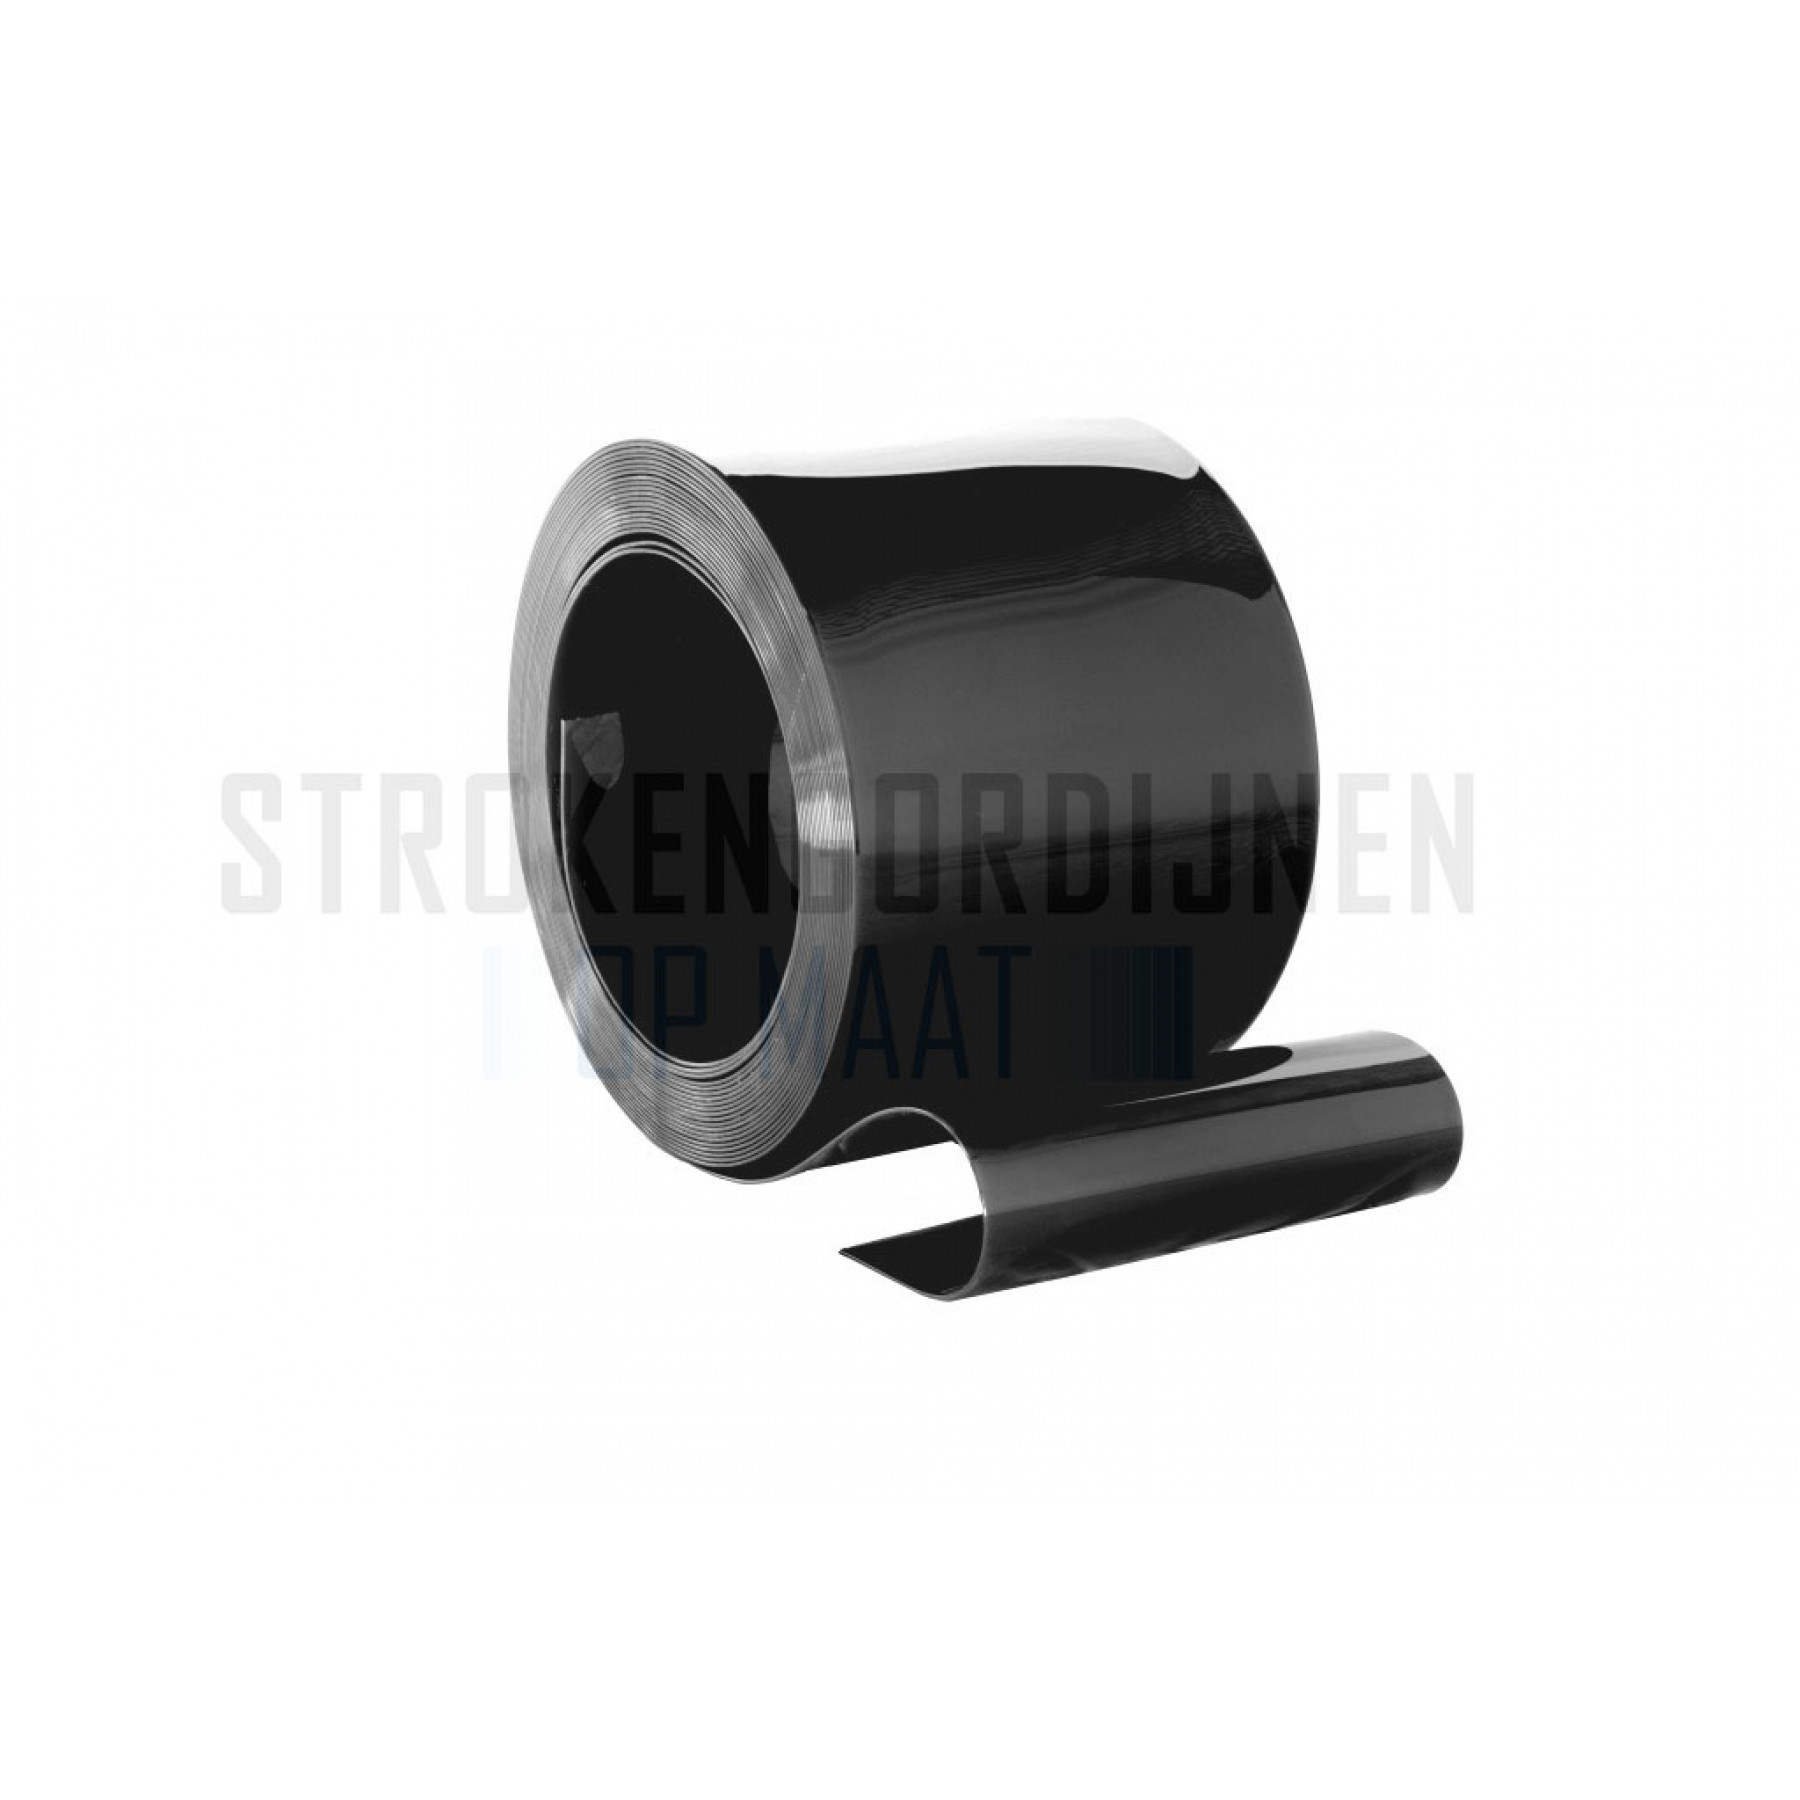 PVC op rol 300mm breed, 3mm dik, 50 meter lengte, zwart ondoorzichtig